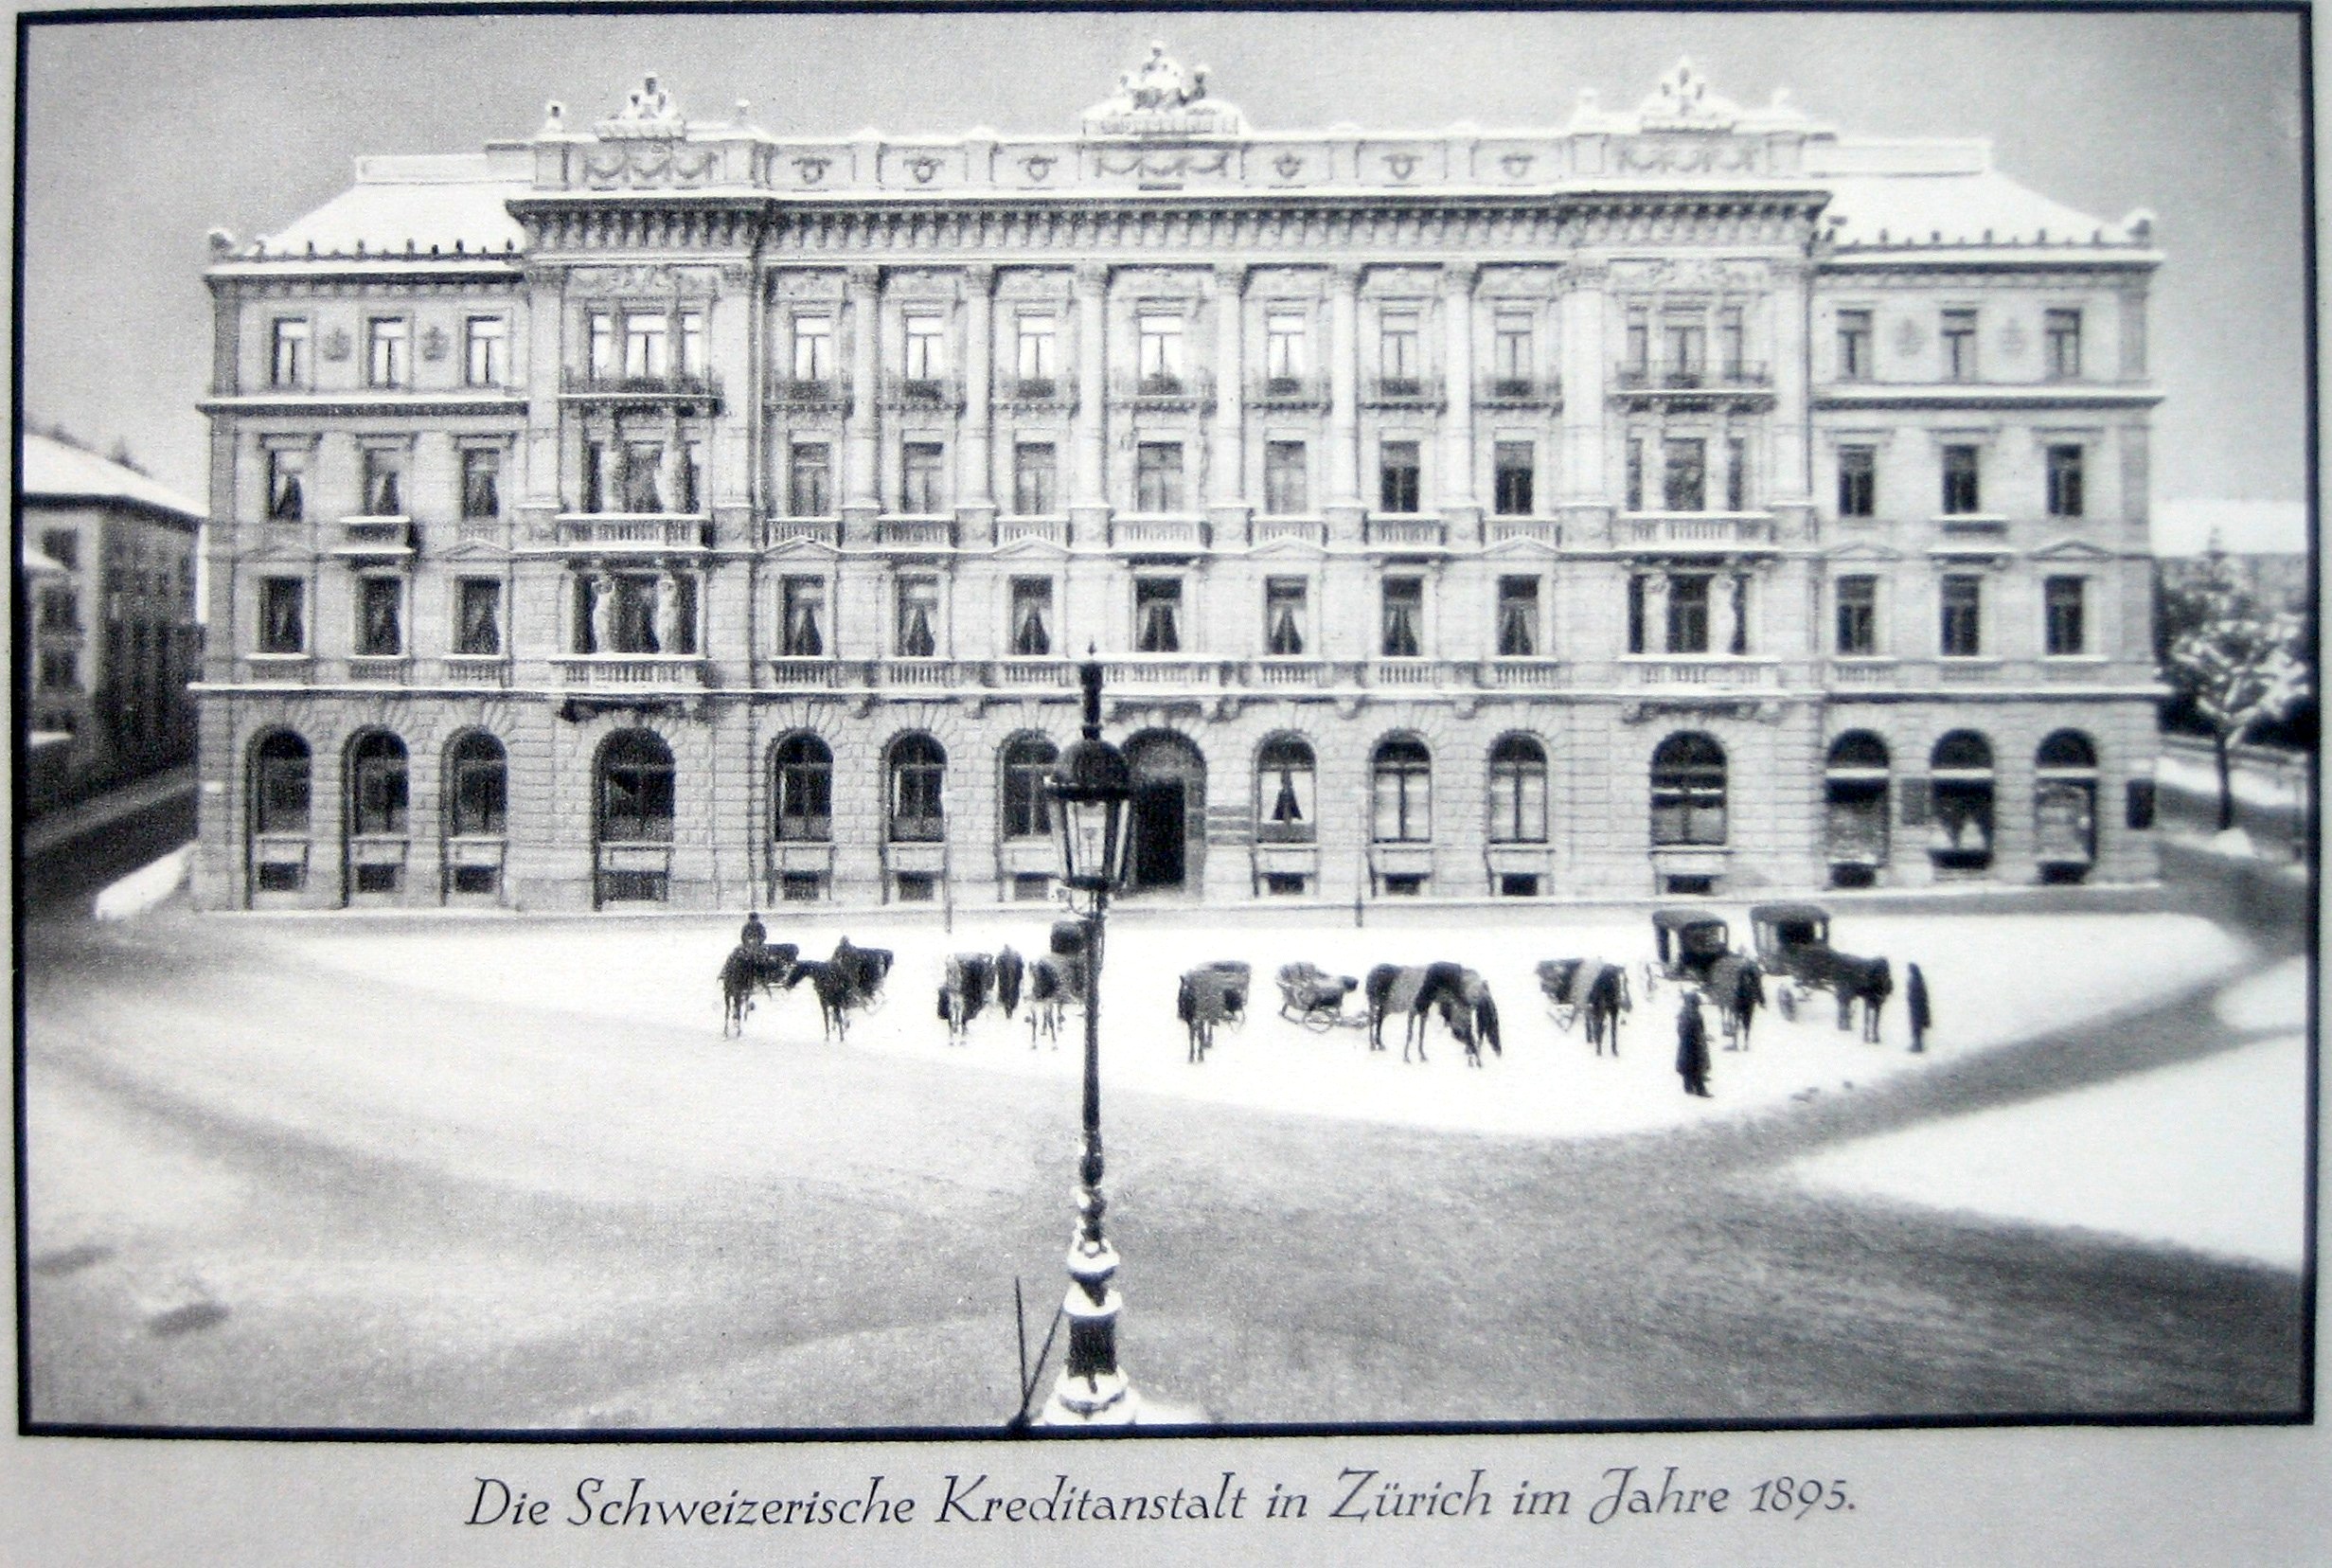 The headquarters of Schweizerische Kreditanstalt on Zurich's Paradeplatz